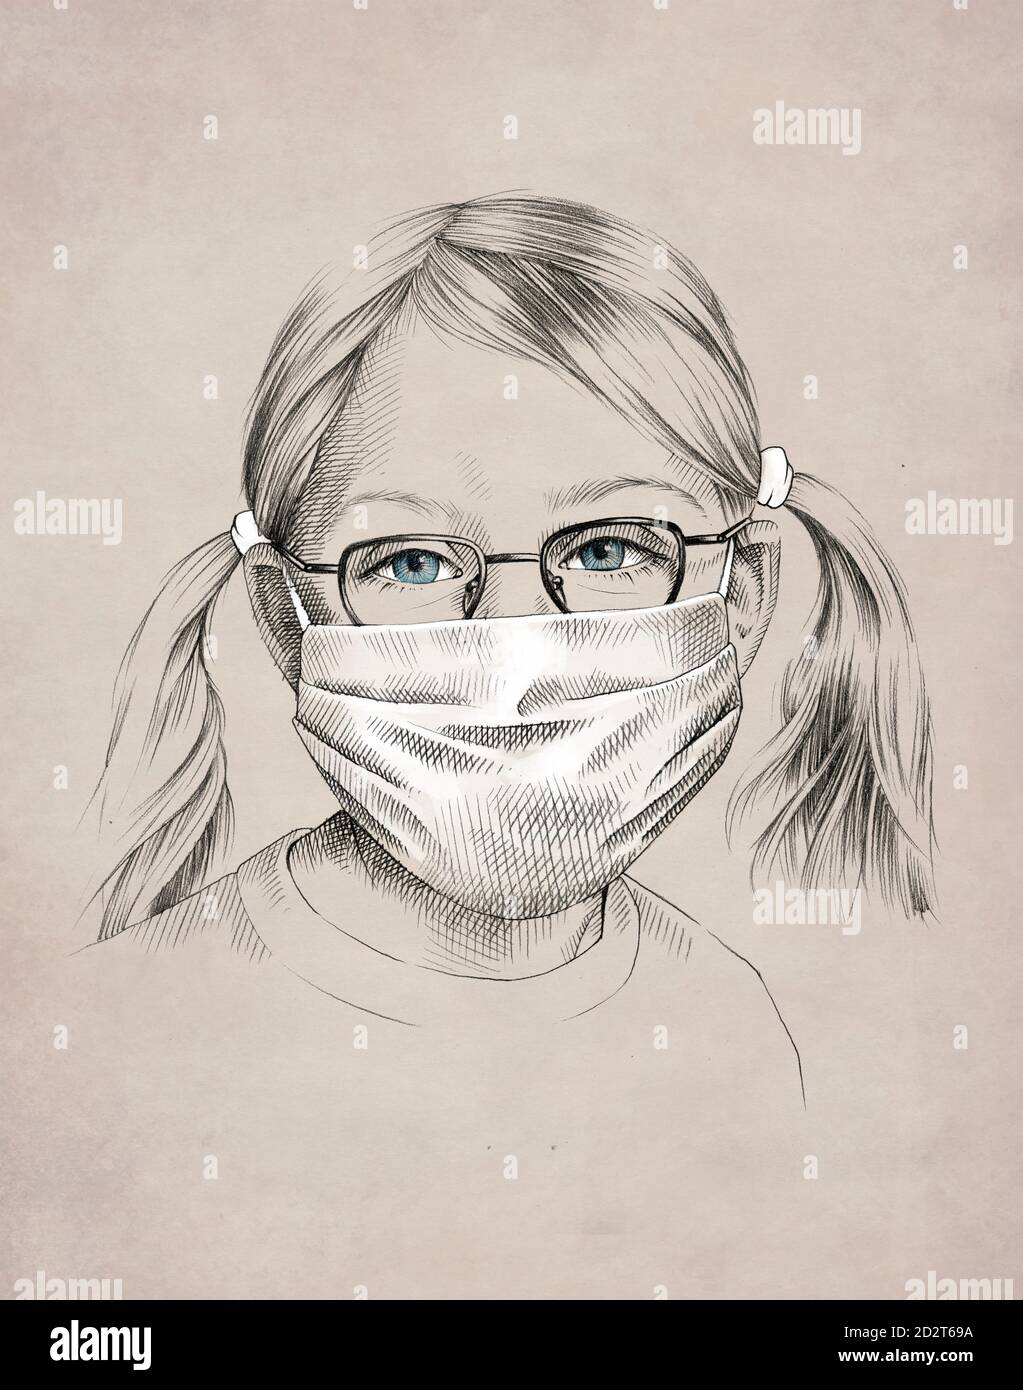 Dessin d'une adorable petite fille avec des lunettes aux yeux bleus porter un masque de protection pendant une pandémie de coronavirus Banque D'Images